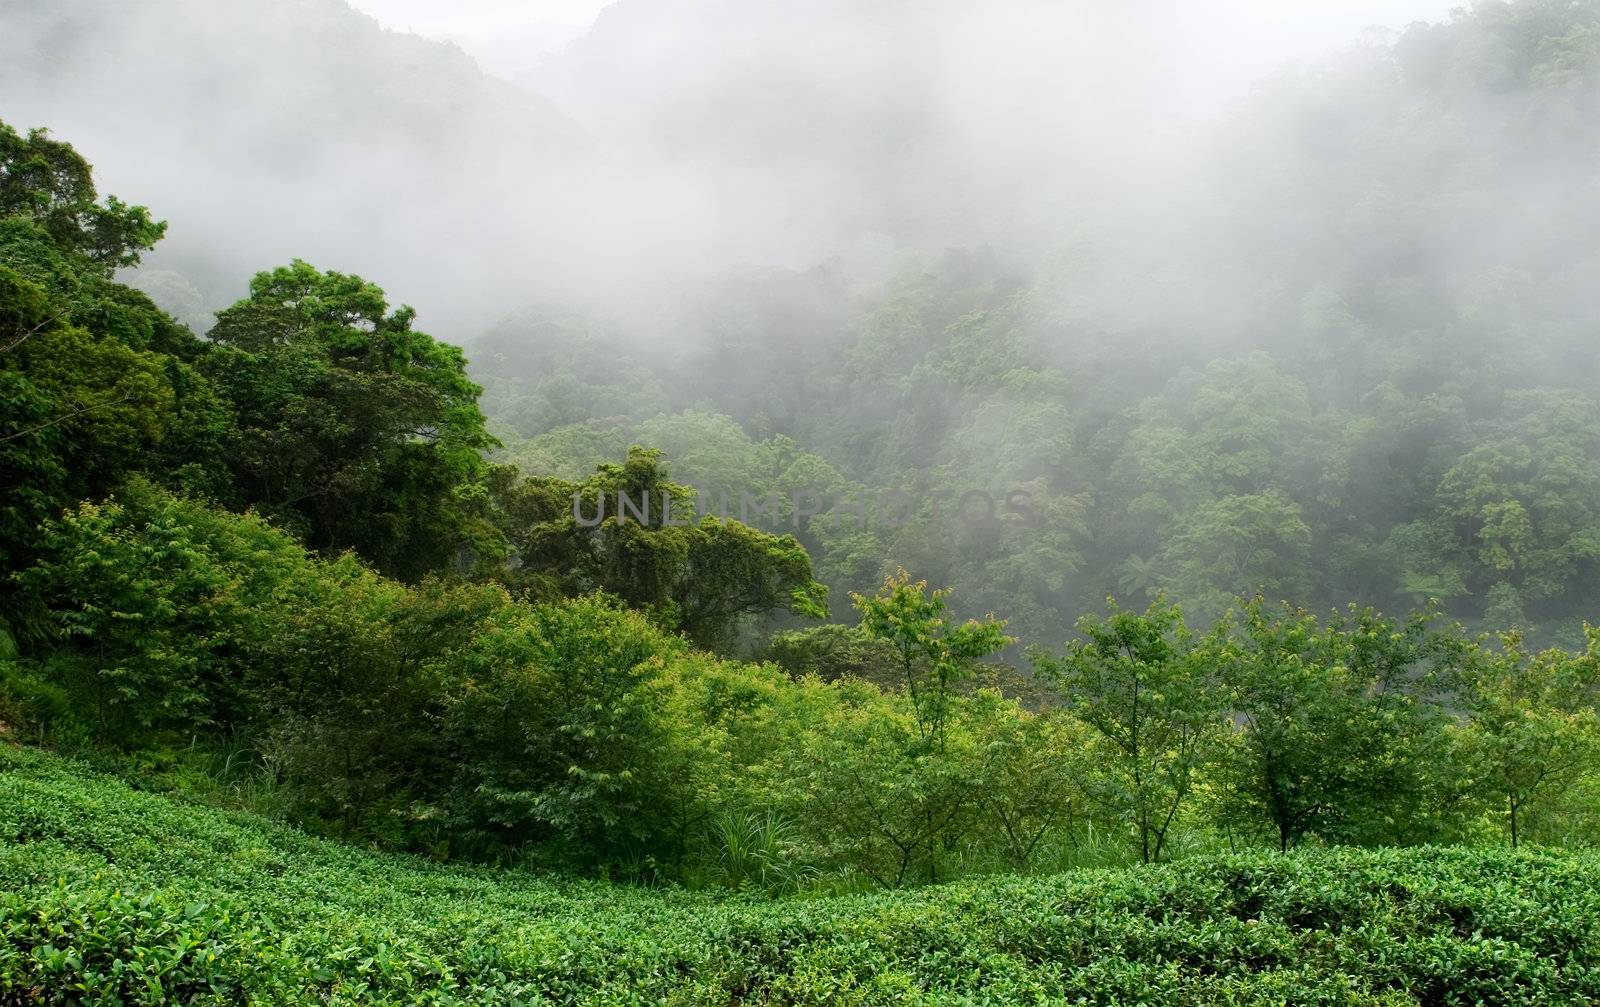 It is a green fresh tea leaf farm.